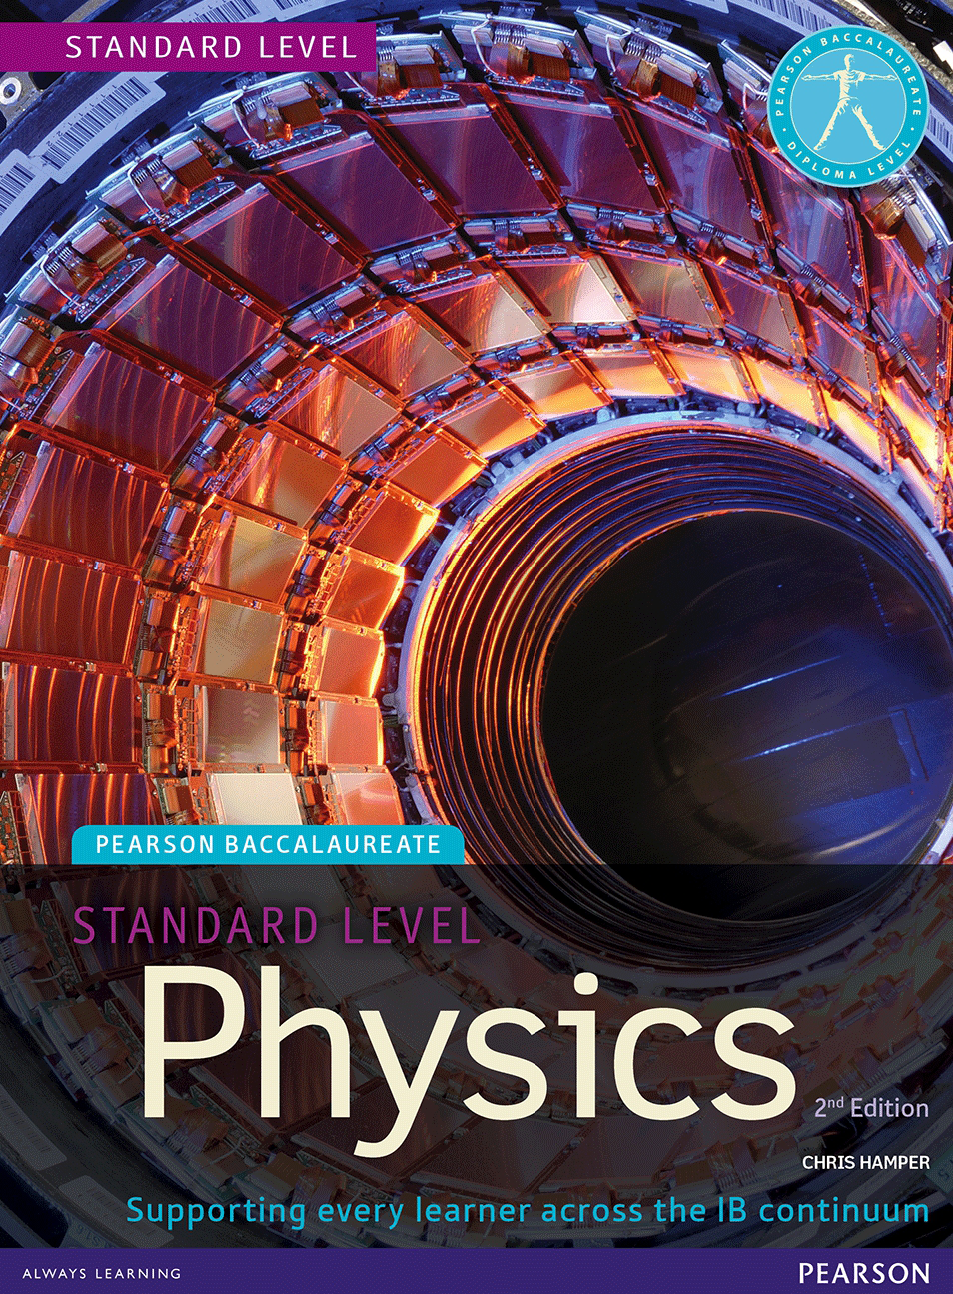 历年国际IB Physics课程教材课本